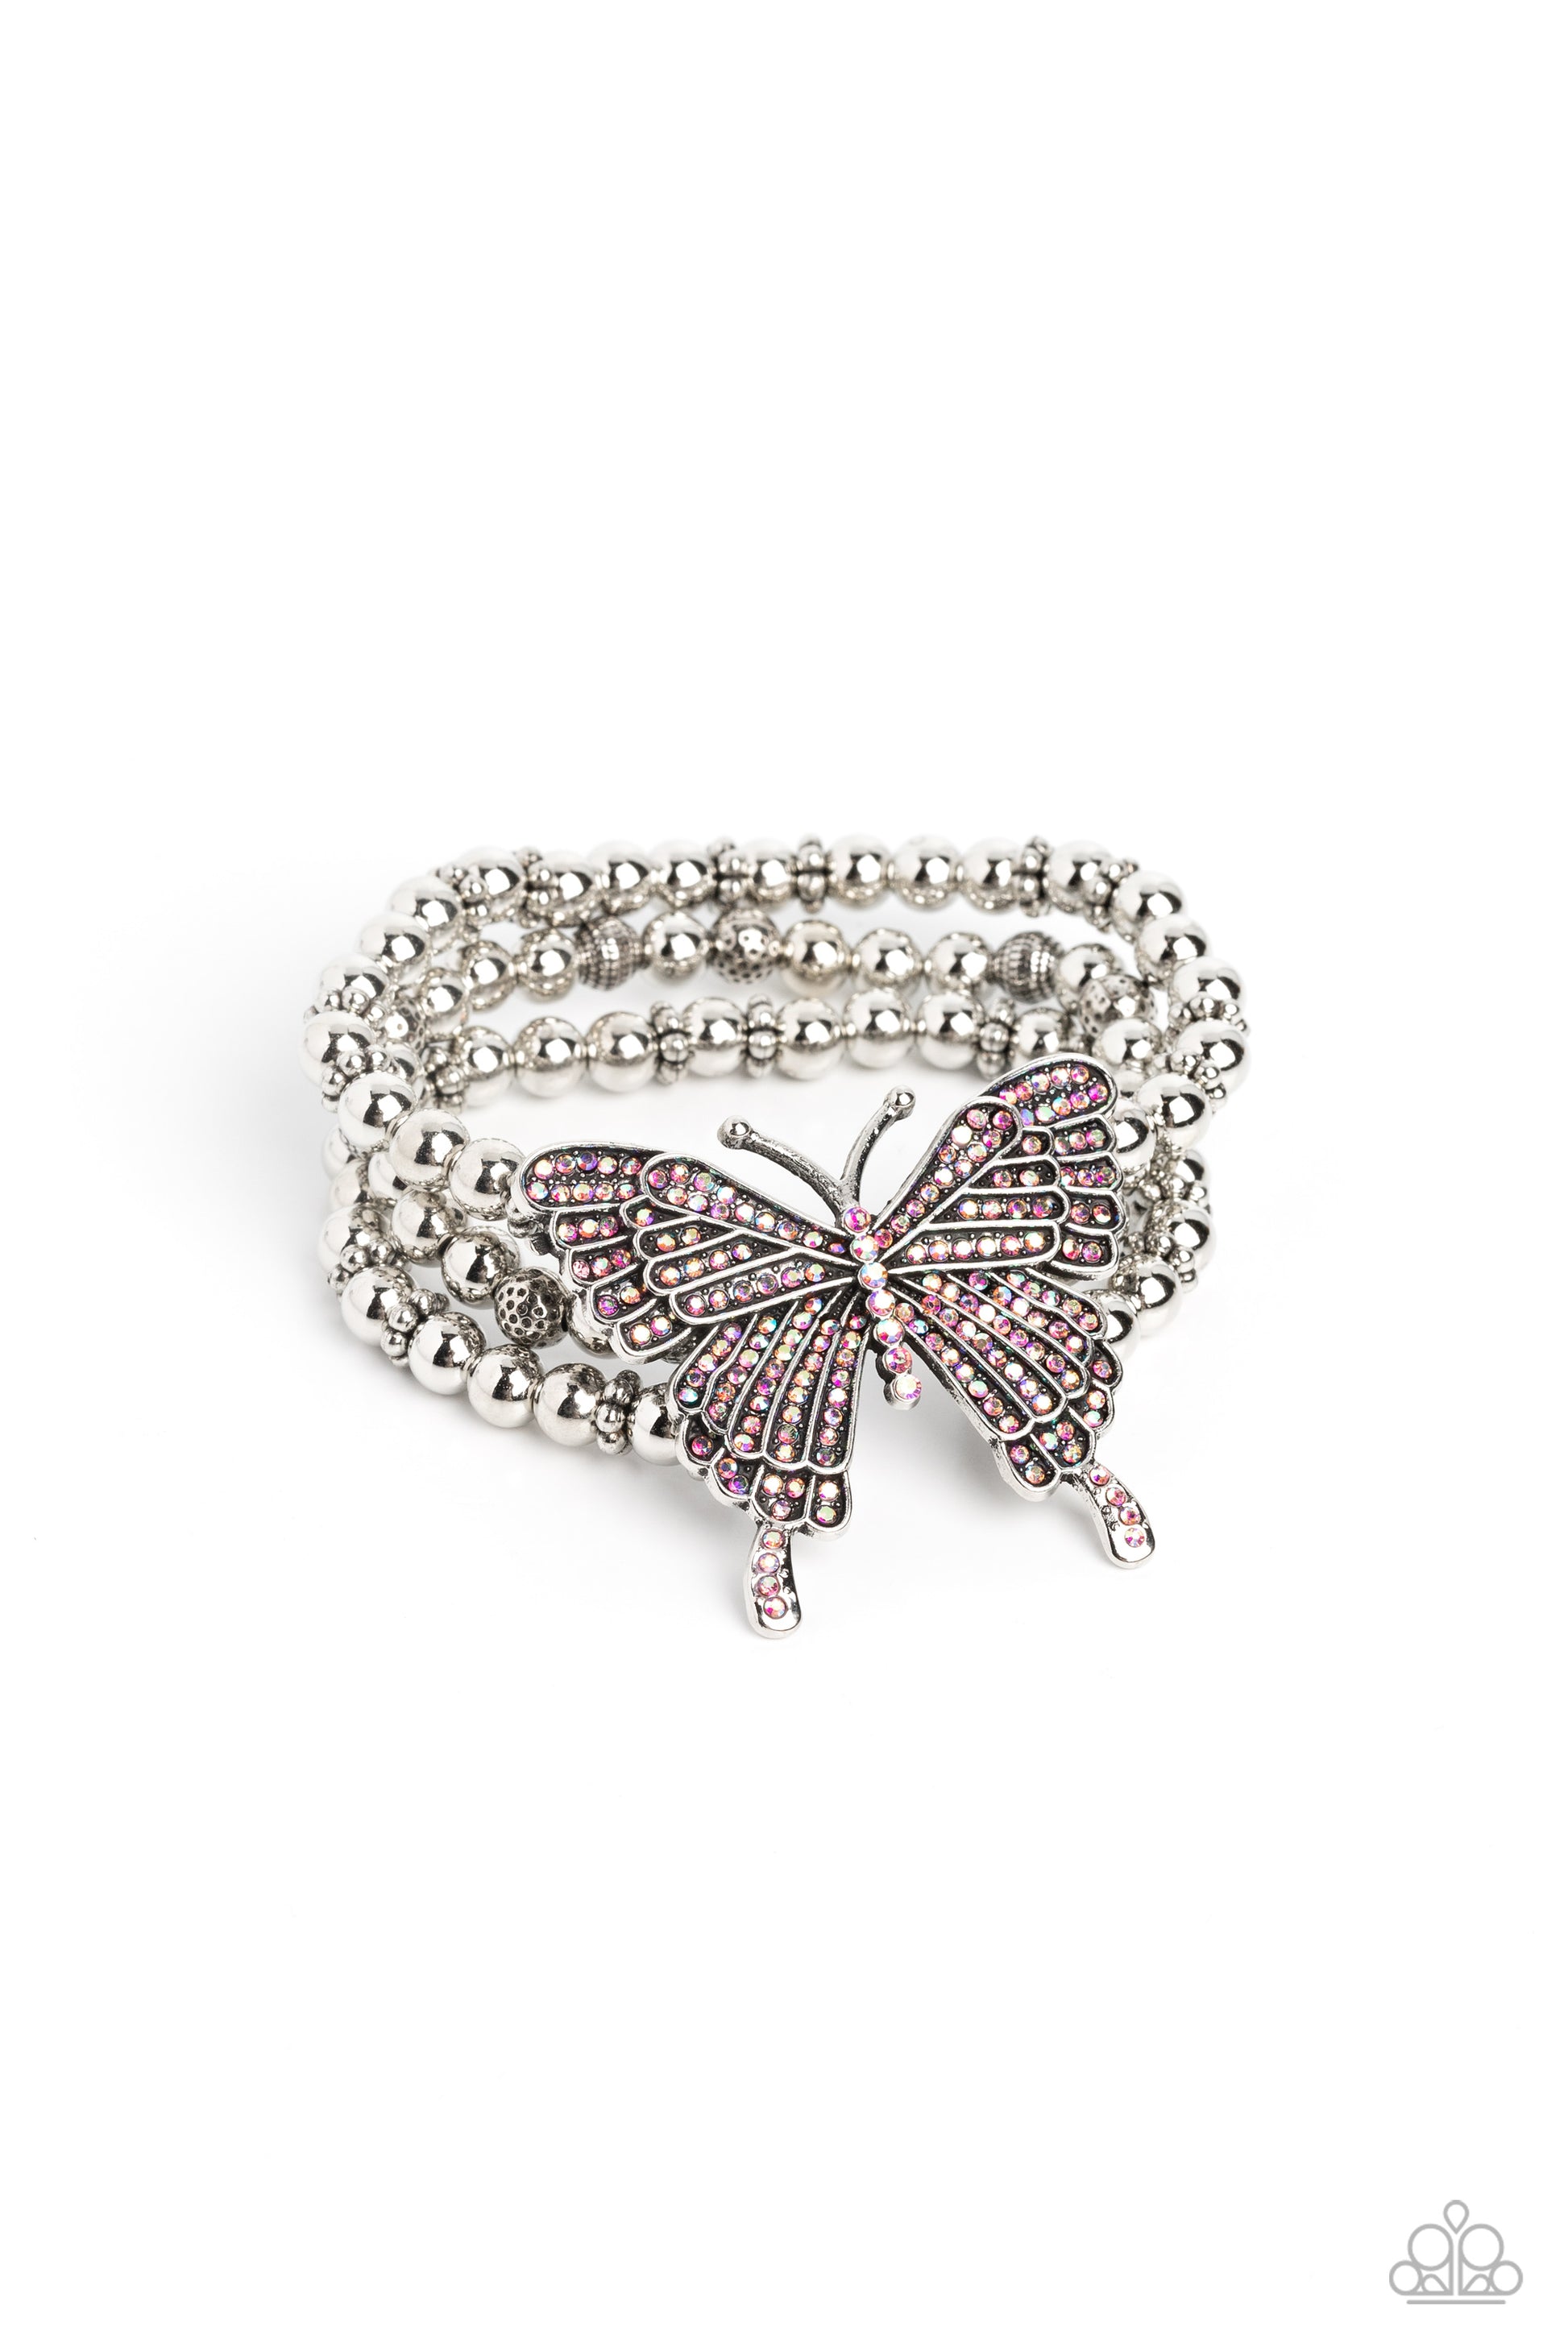 Bracelet, Sensitive Skin, Hypoallergenic Jewelry, pink, butterfly, stretchy bracelet